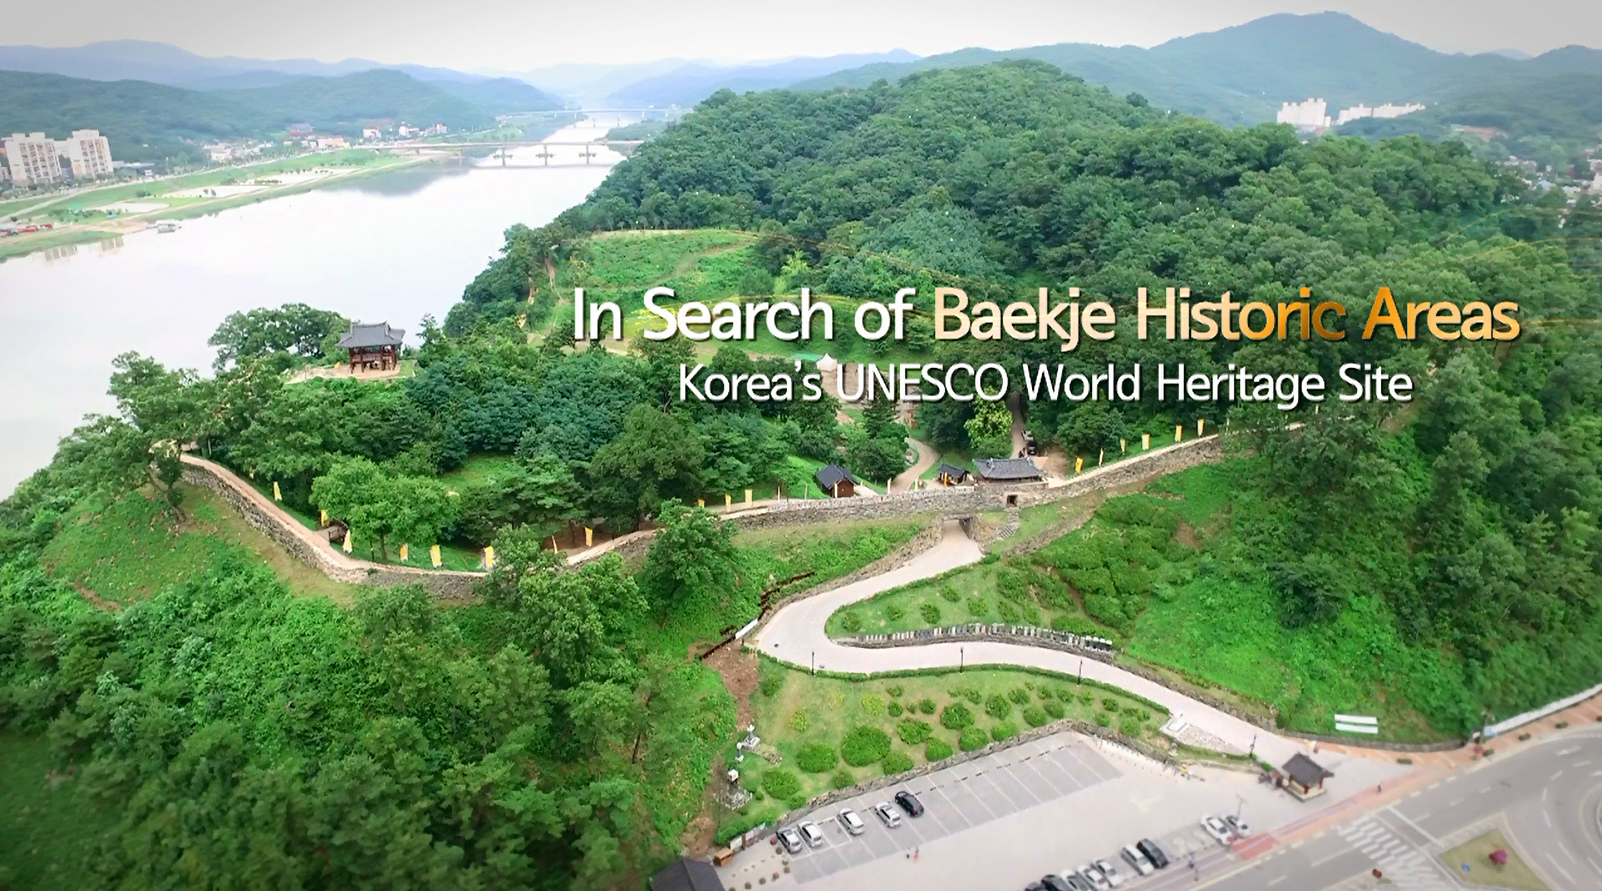 백제역사유적지구 캠페인 영상 - 영문 (2016) “In Search of Baekje Historic Areas”